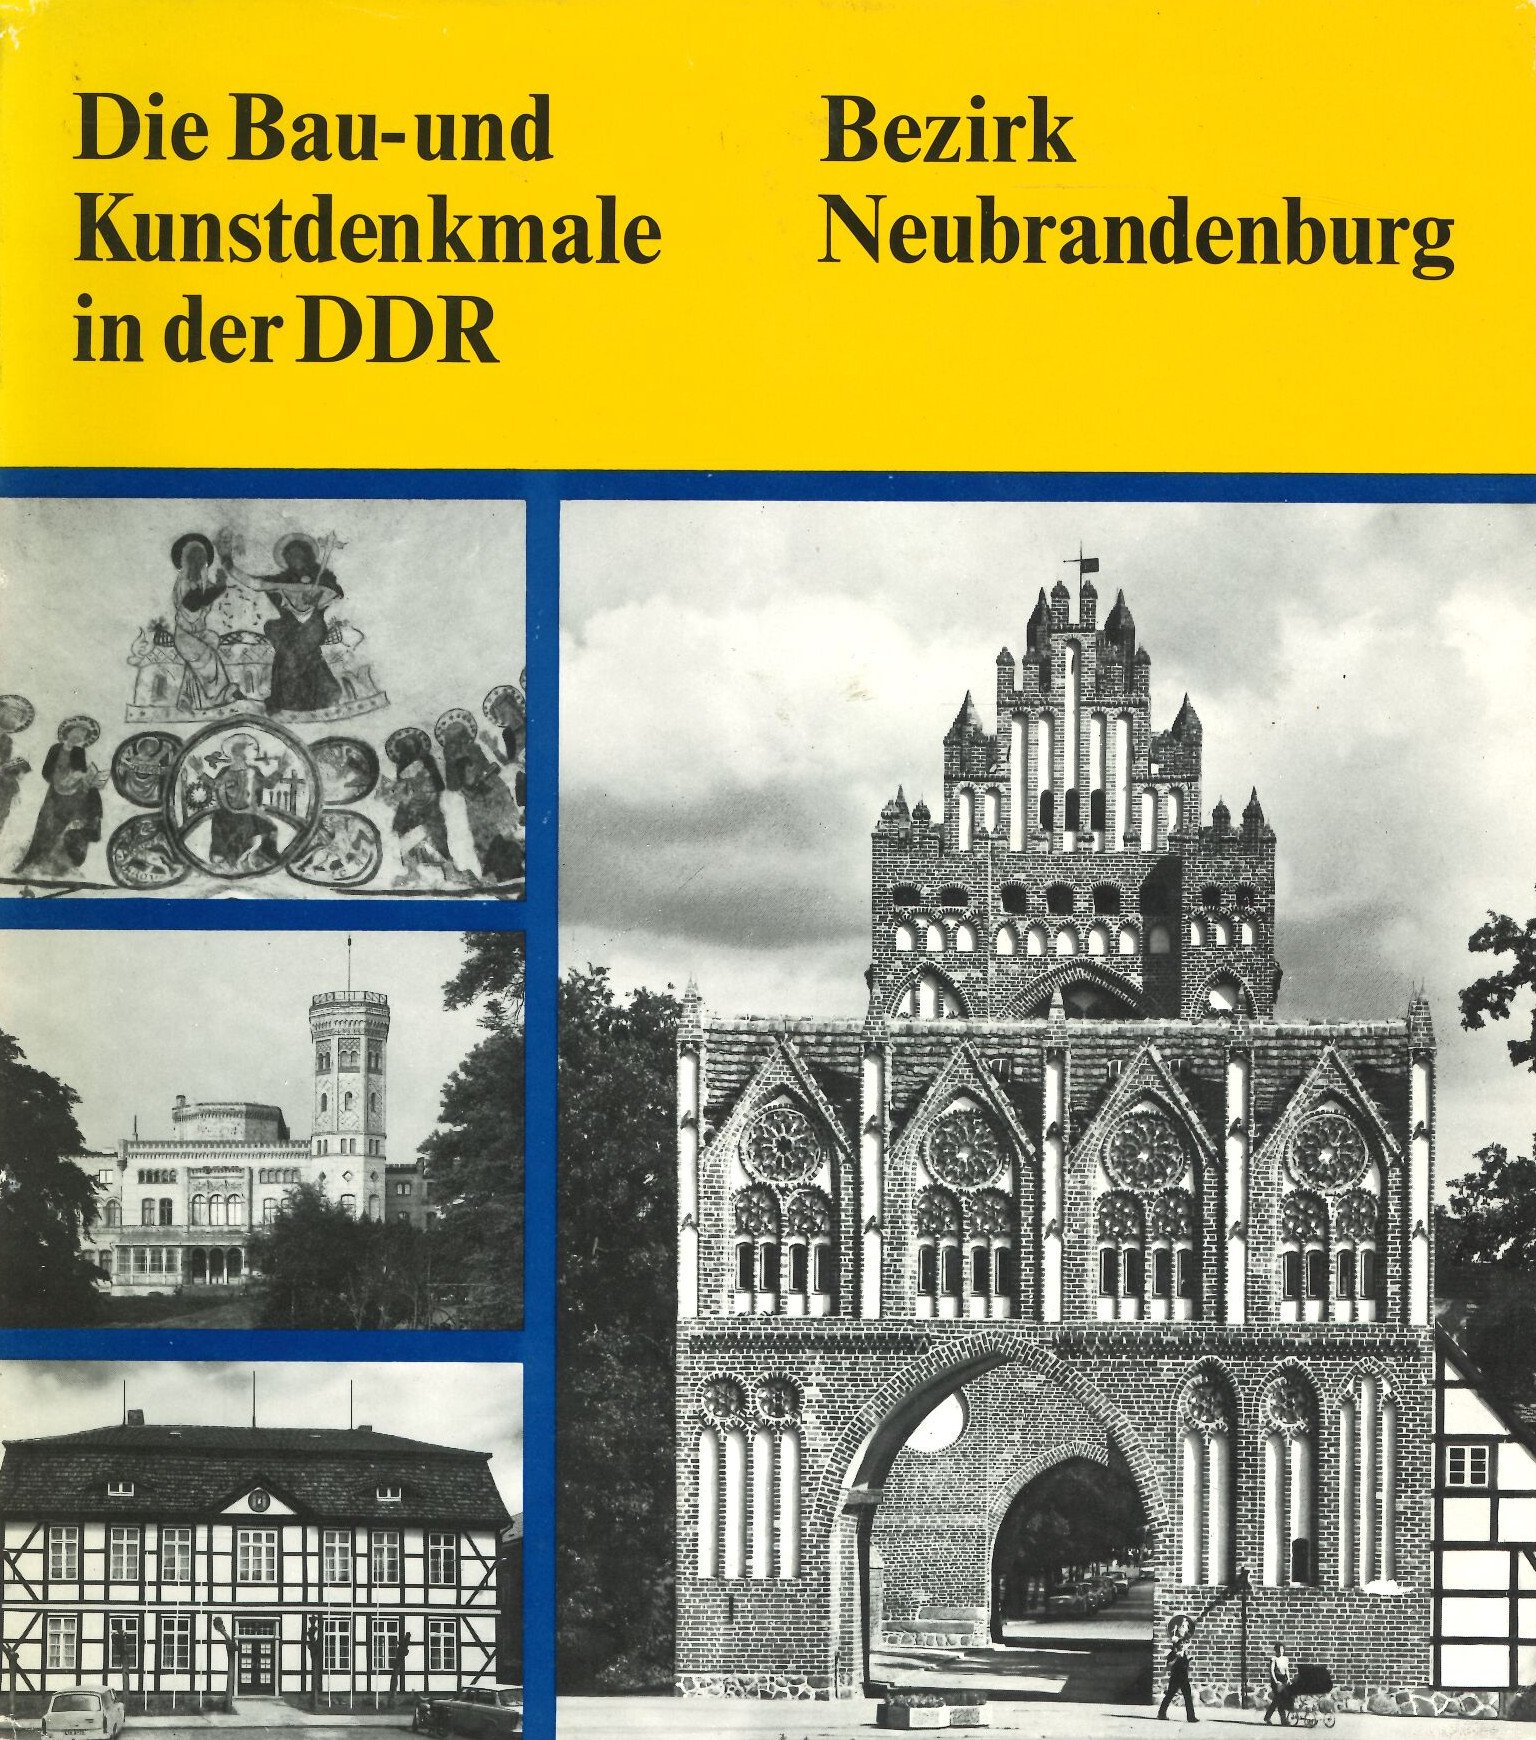 Die Bau- und Kunstdenkmale in der DDR - Bezirk Neubrandenburg (Feuerwehrmuseum Grethen CC BY-NC-SA)